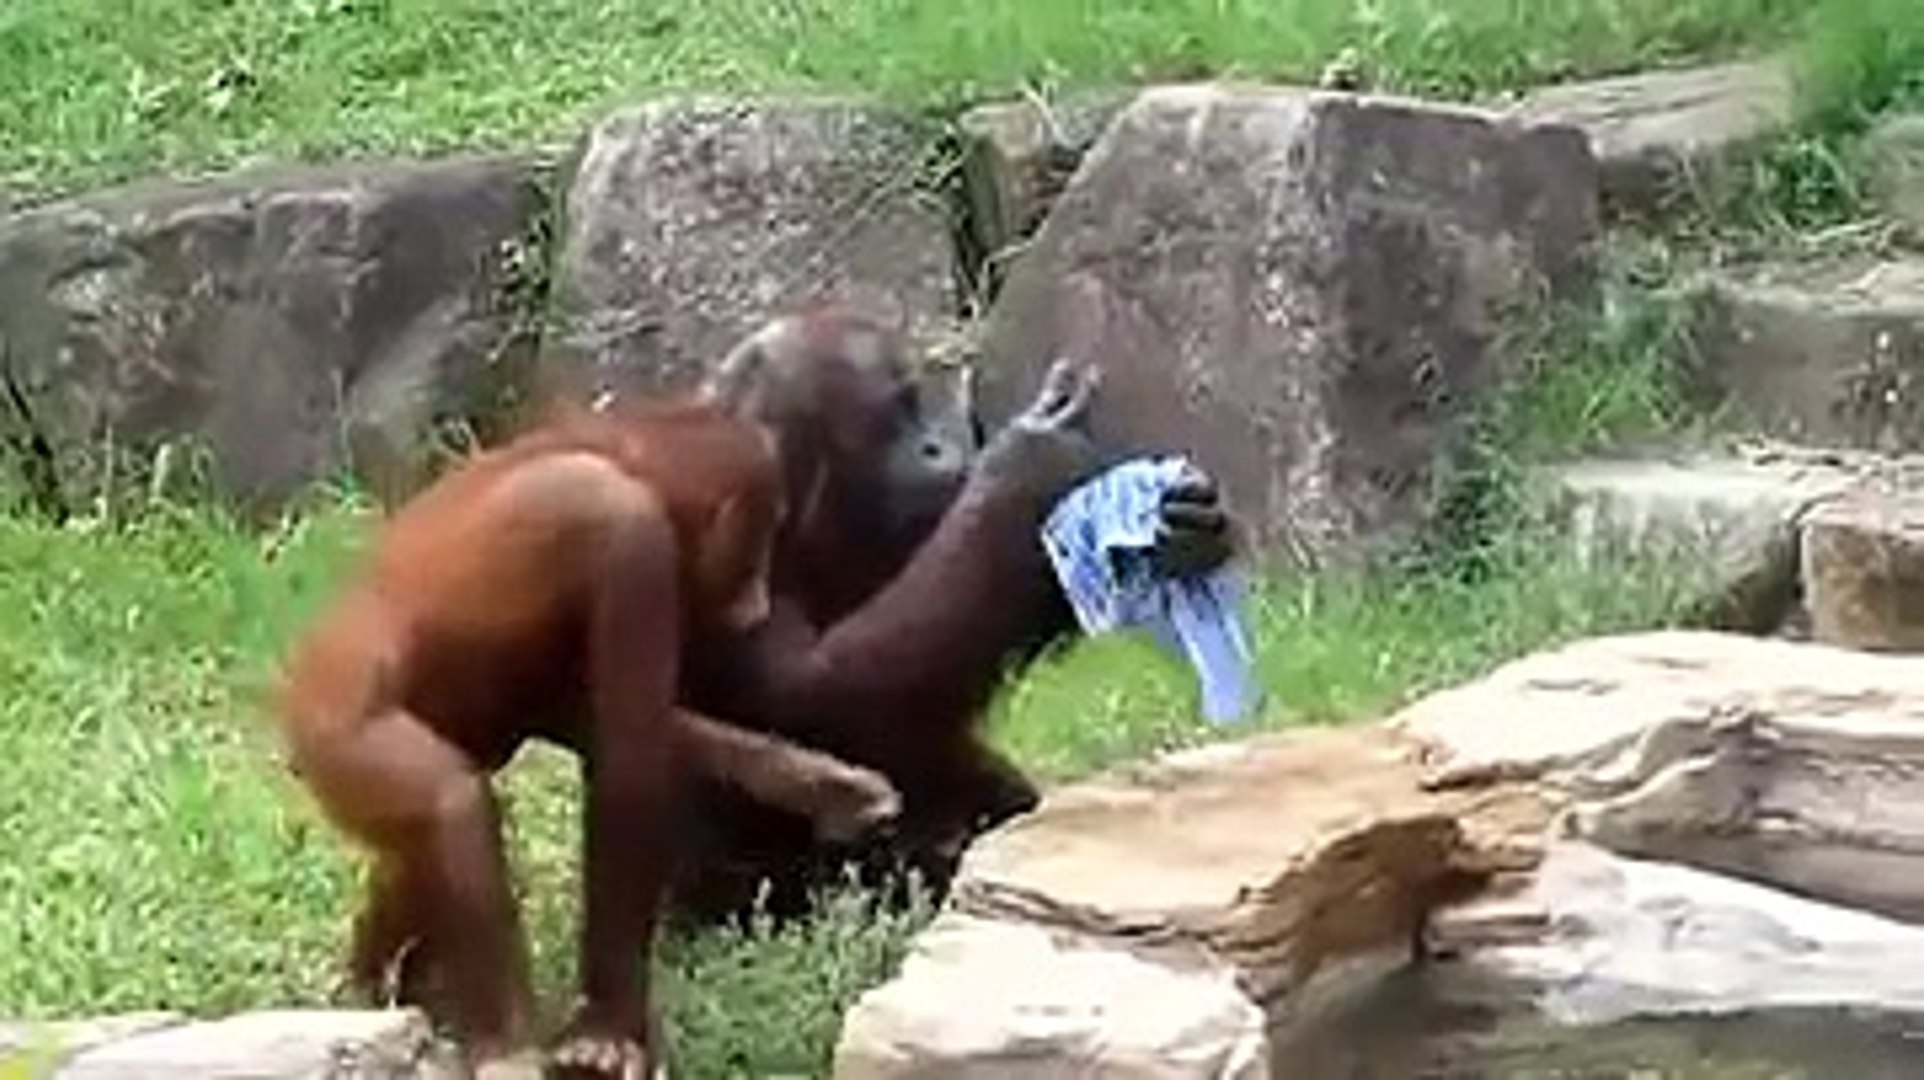 Sıcaktan Bunalan Orangutan Bakın Nasıl Serinlemeye Çalıştı!